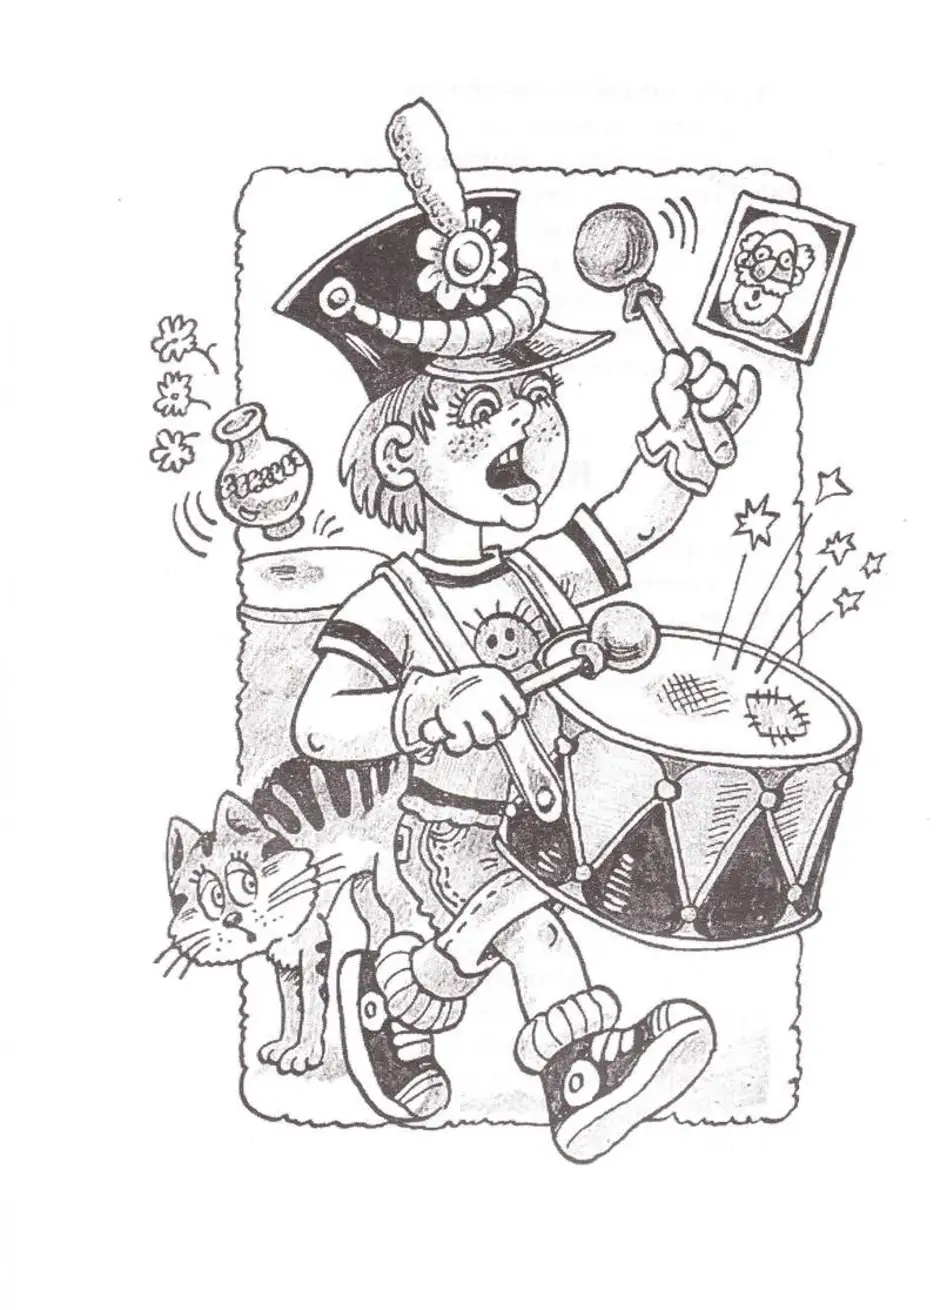 Дж волшебный барабан. Дж Родари Волшебный барабан. Джанни Родари Волшебный барабан иллюстрации к сказке. Рисунок к сказке Волшебный барабан Джанни Родари. Мальчик с барабаном.